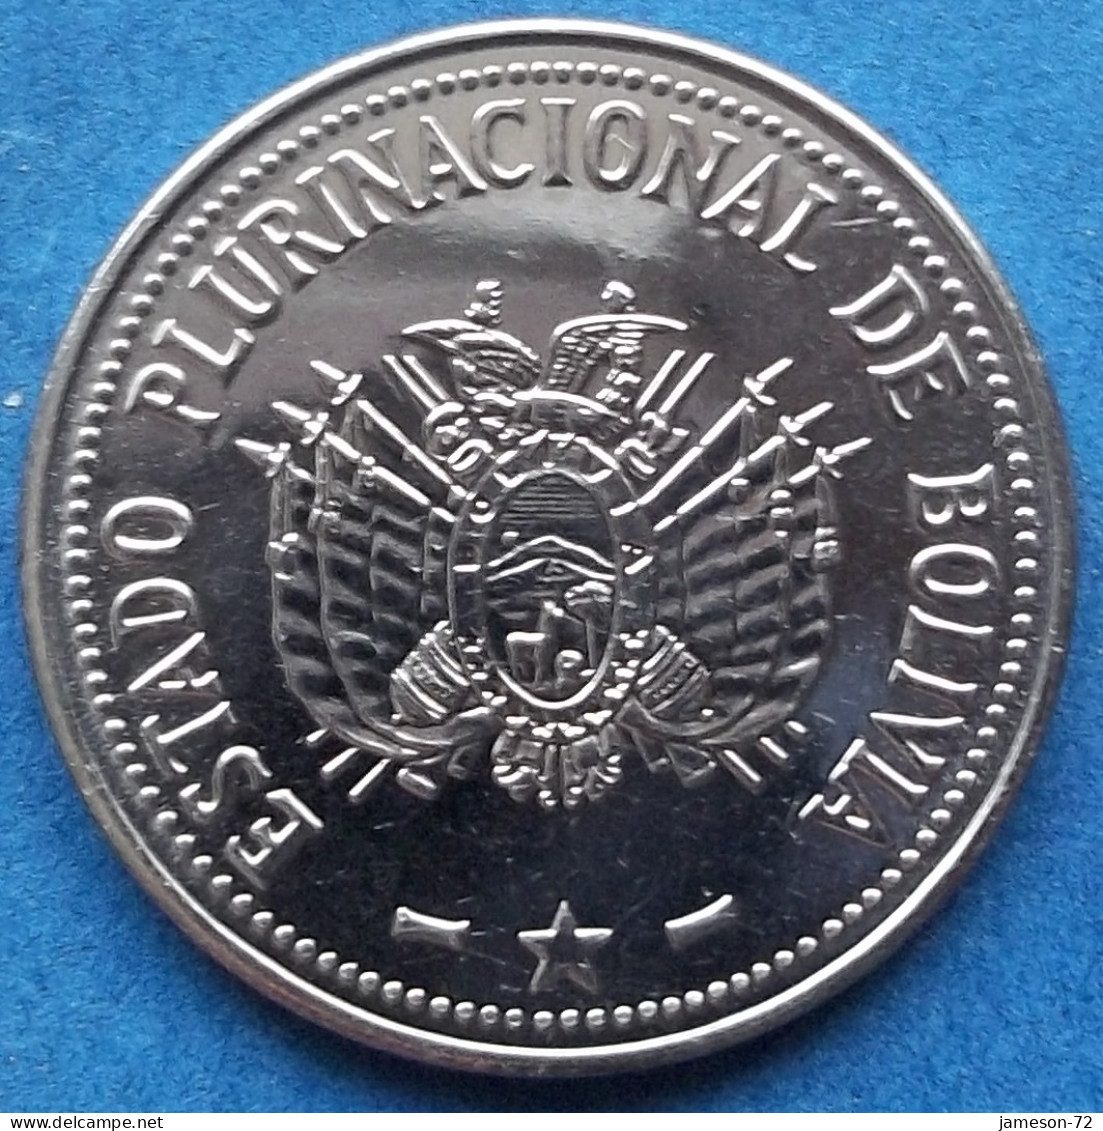 BOLIVIA - 20 Centavos 2012 KM# 215 Monetary Reform (1987) - Edelweiss Coins - Bolivia